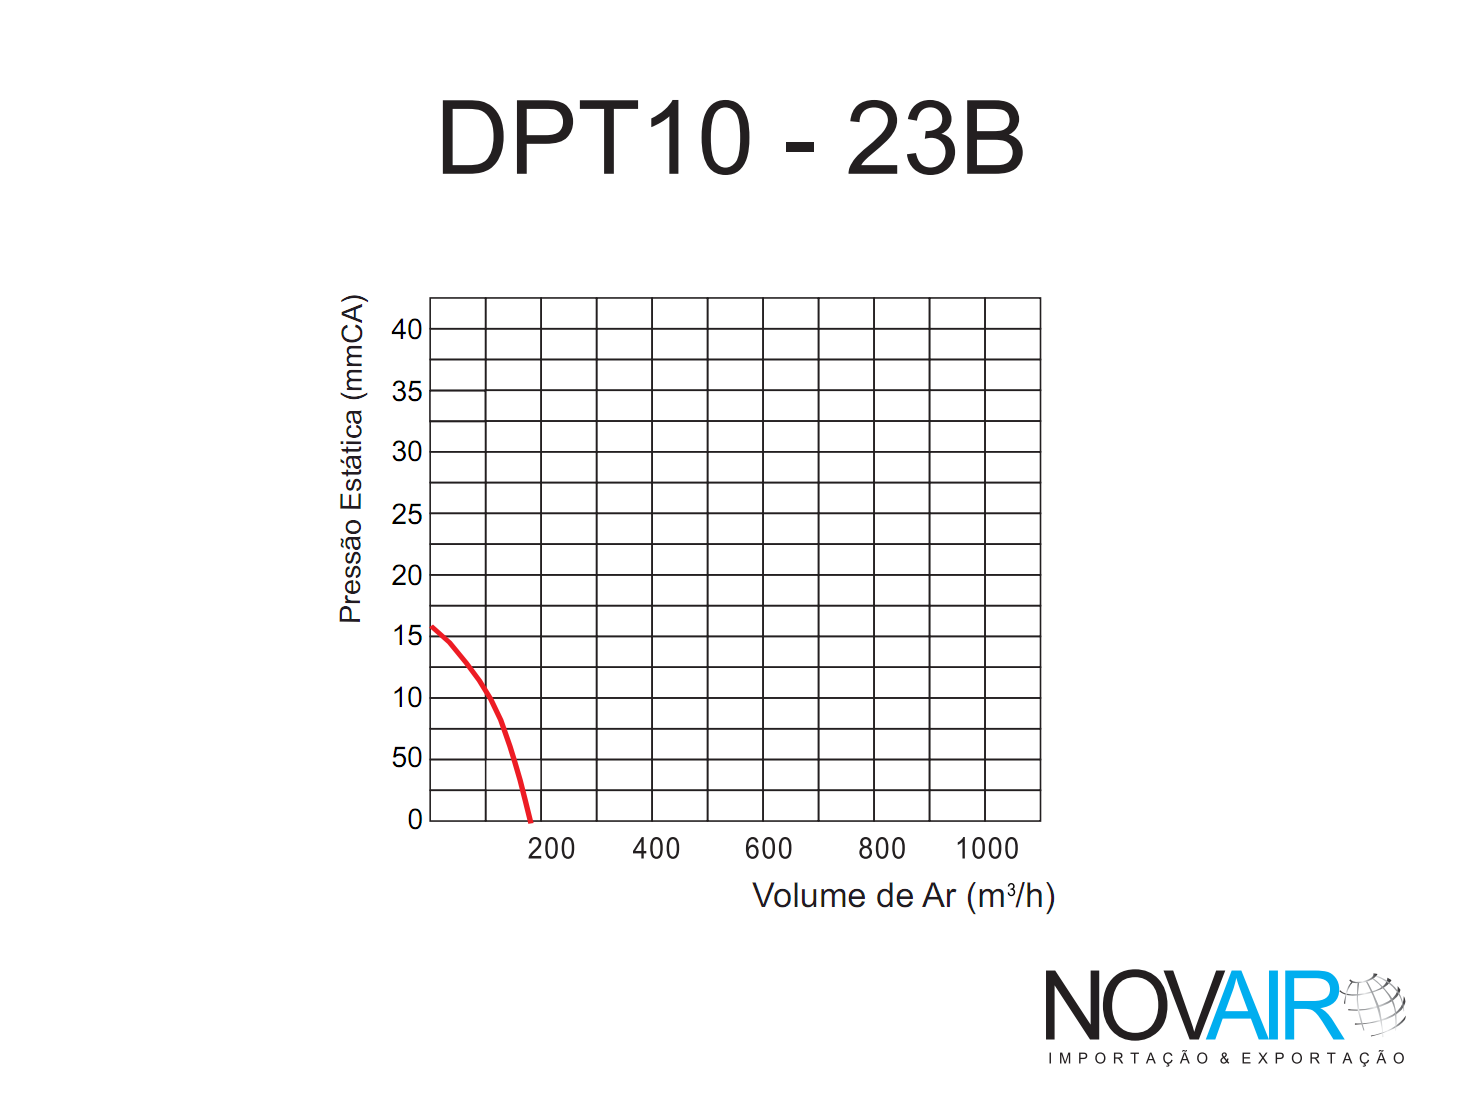 Exaustor Centrífugo Ambientes DPT10-23B  37W  220V 60Hz - Novair